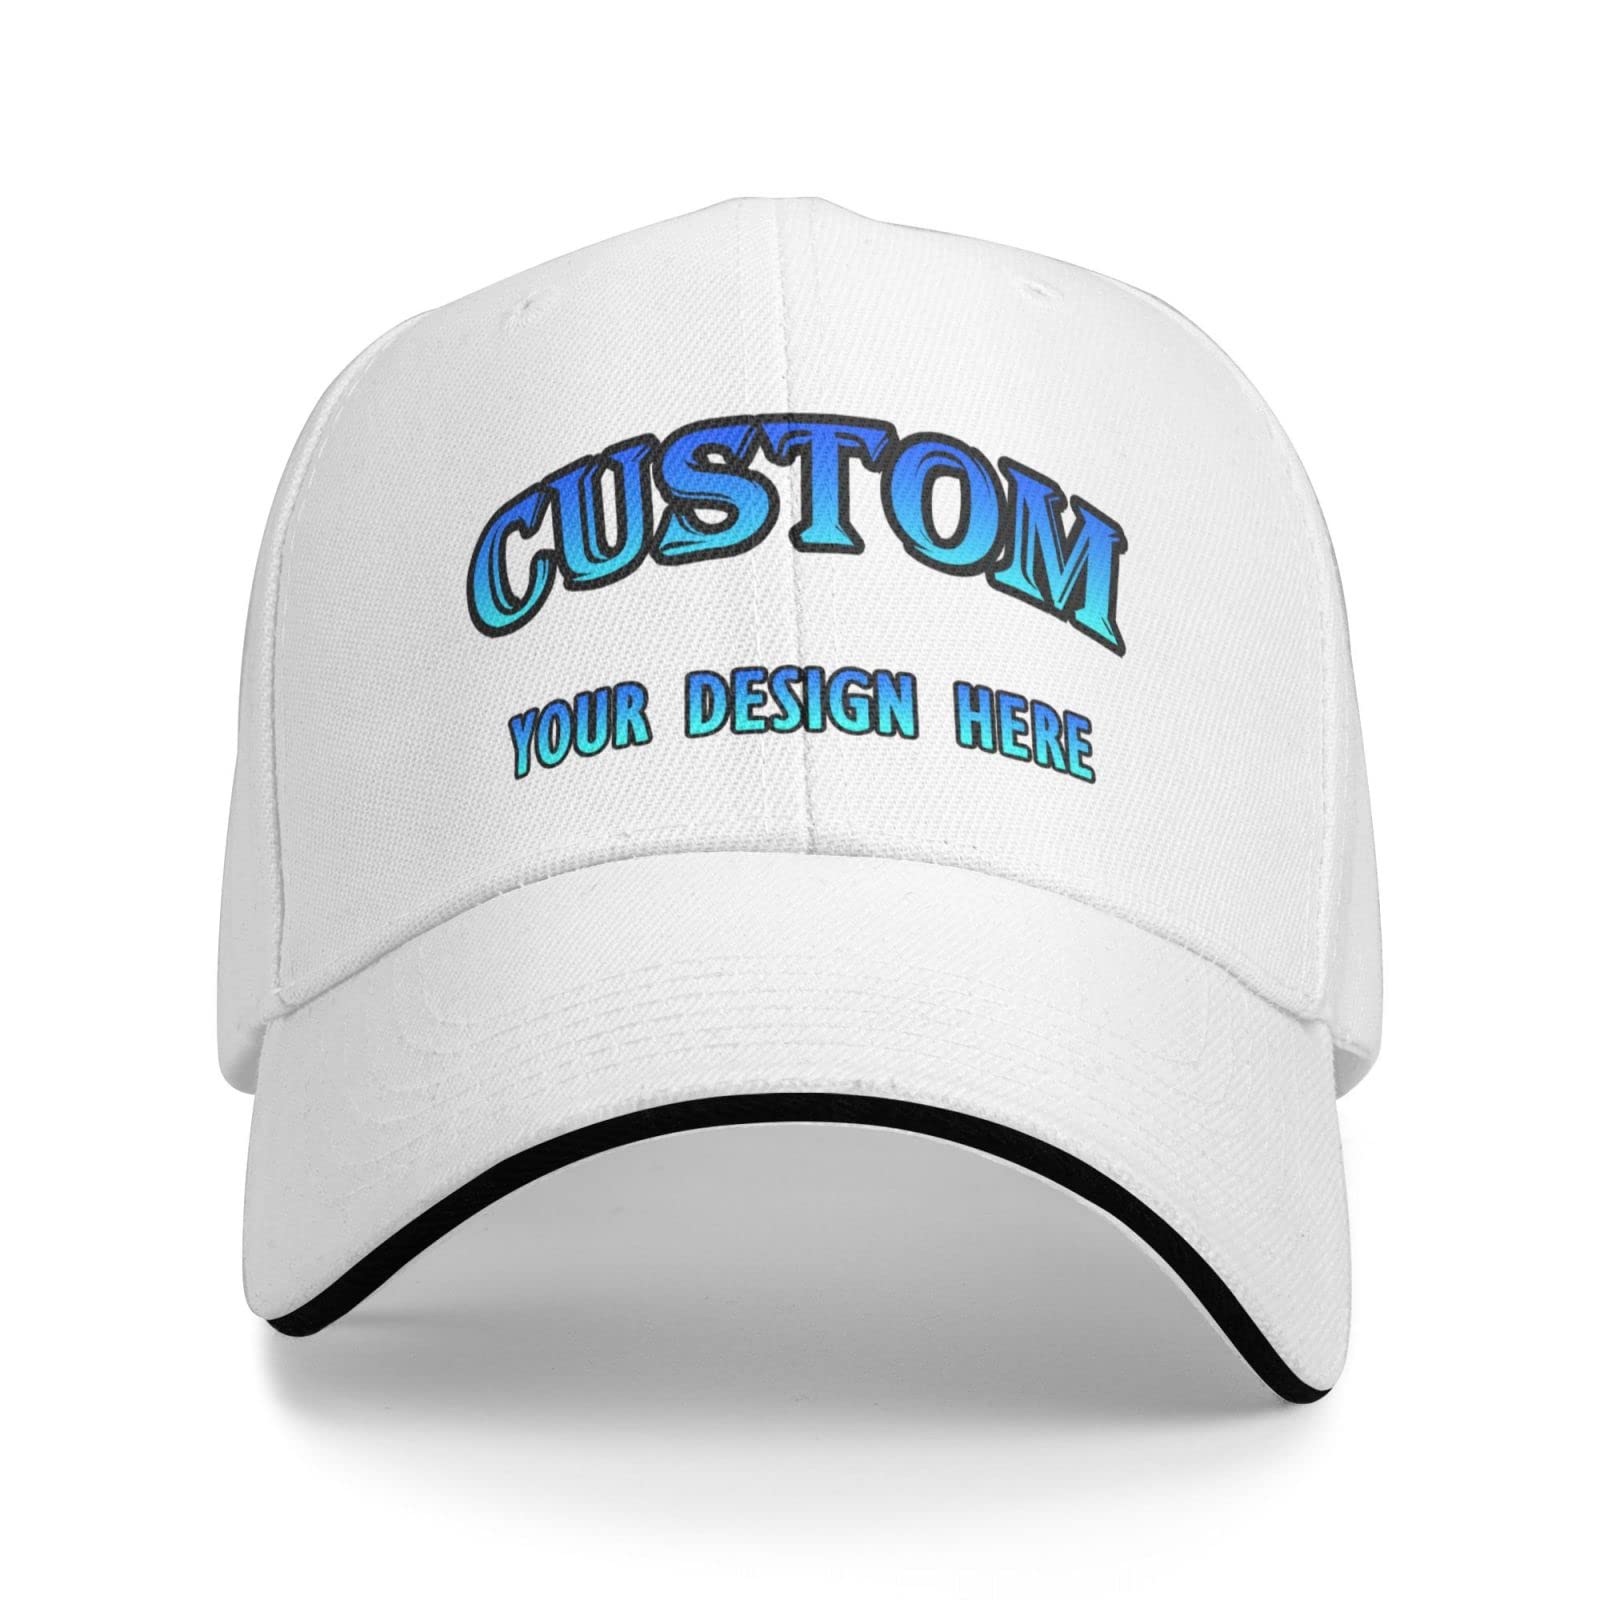 送料無料Personalized Custom Baseball Cap Customize Your Own Design Text Photos Image Logo Adjustable Hat Unisex White